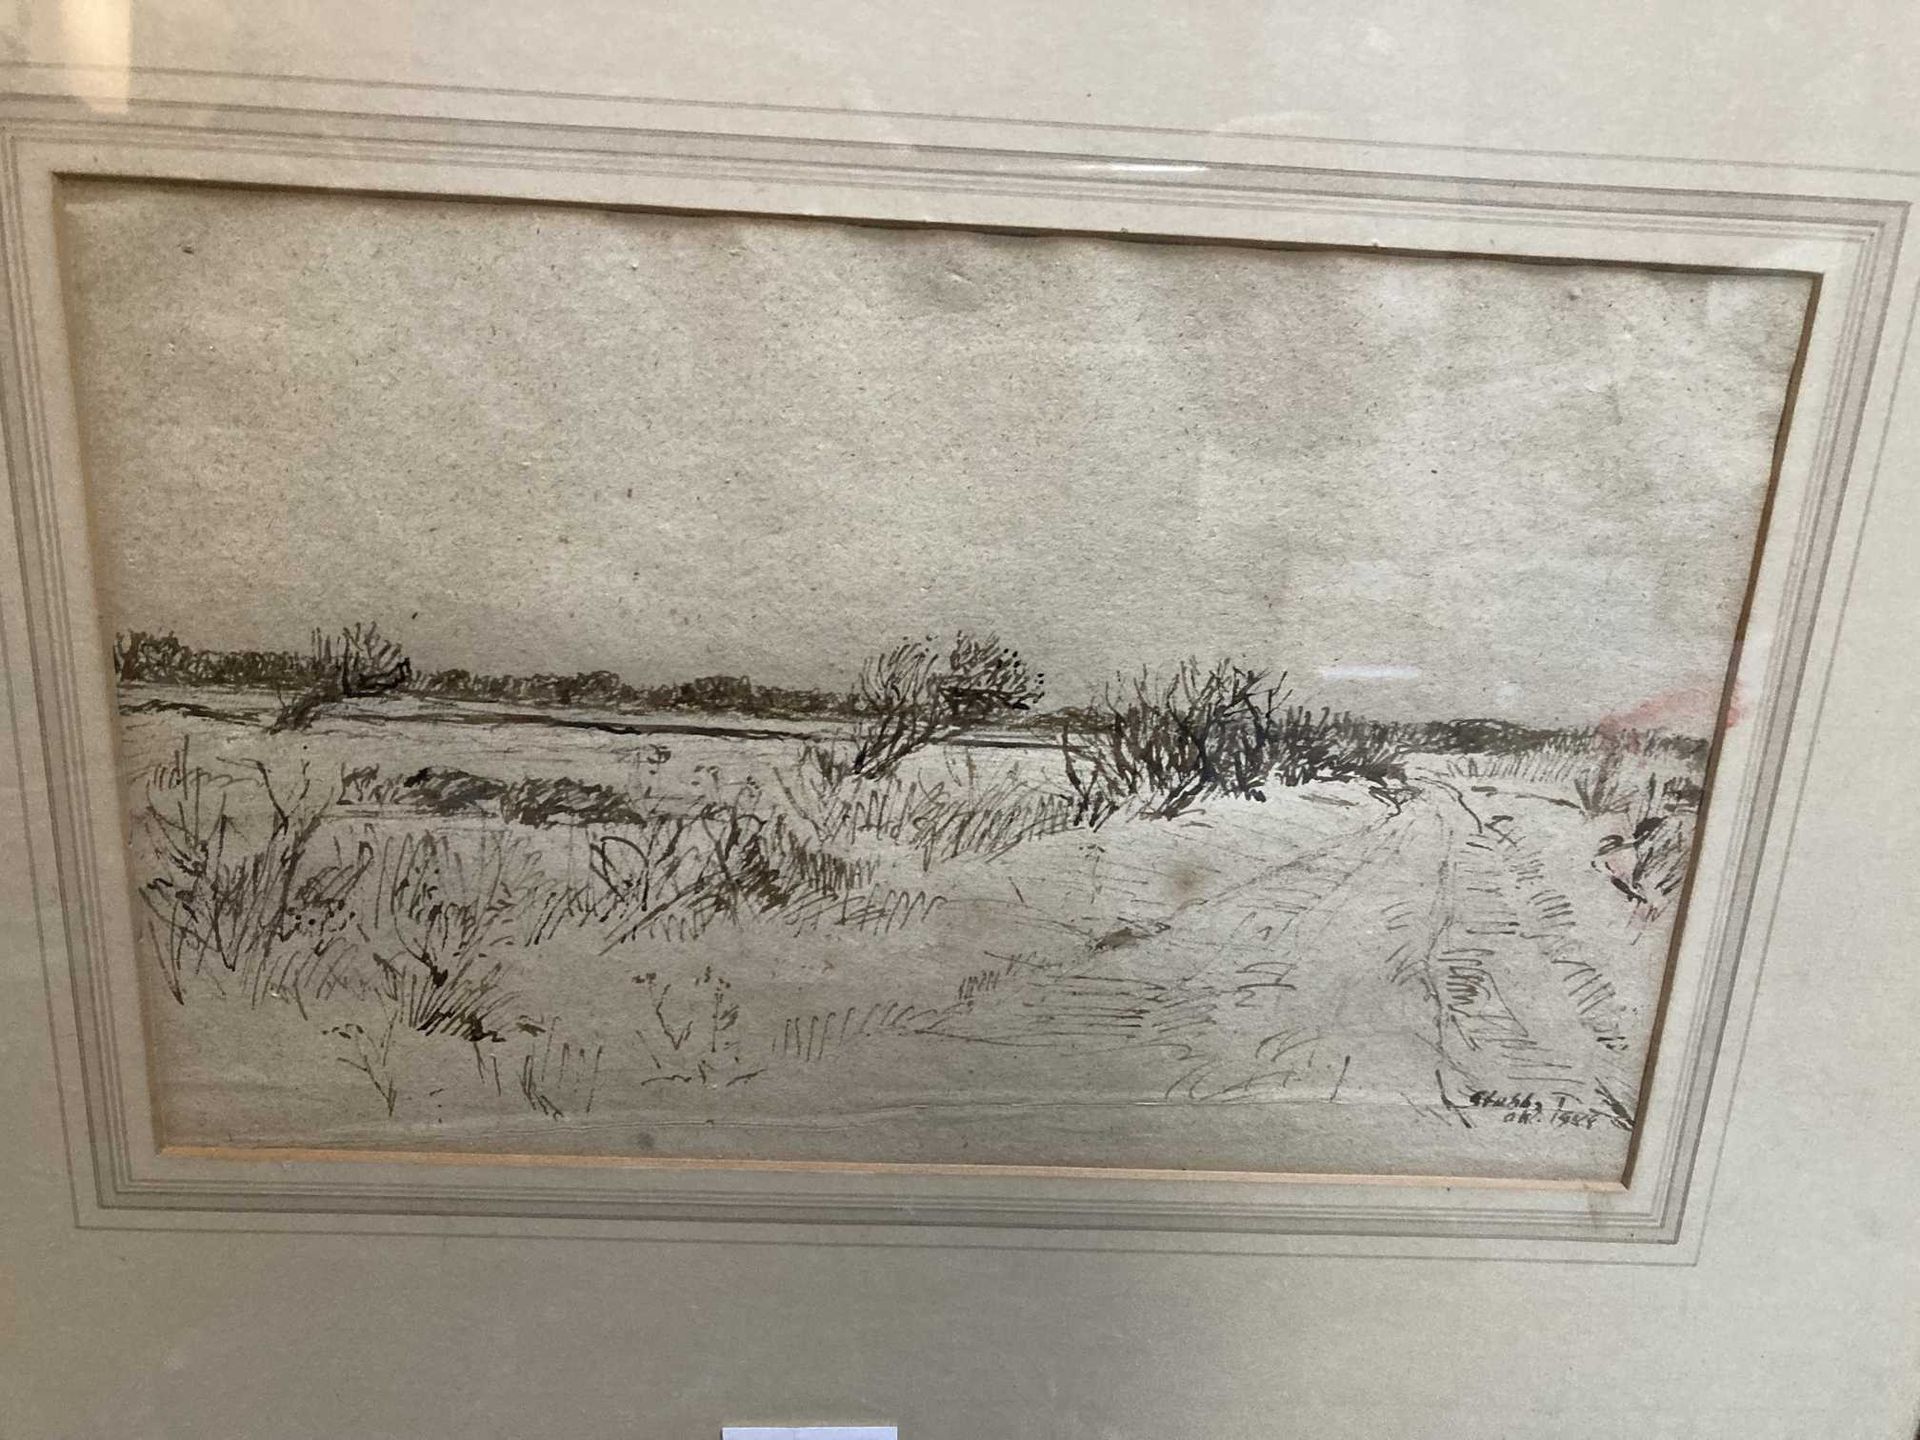 Null 20世纪的学校

景观与湖泊

纸上黑墨水，签名模糊不清

18 x 30厘米

(磨损和污损)